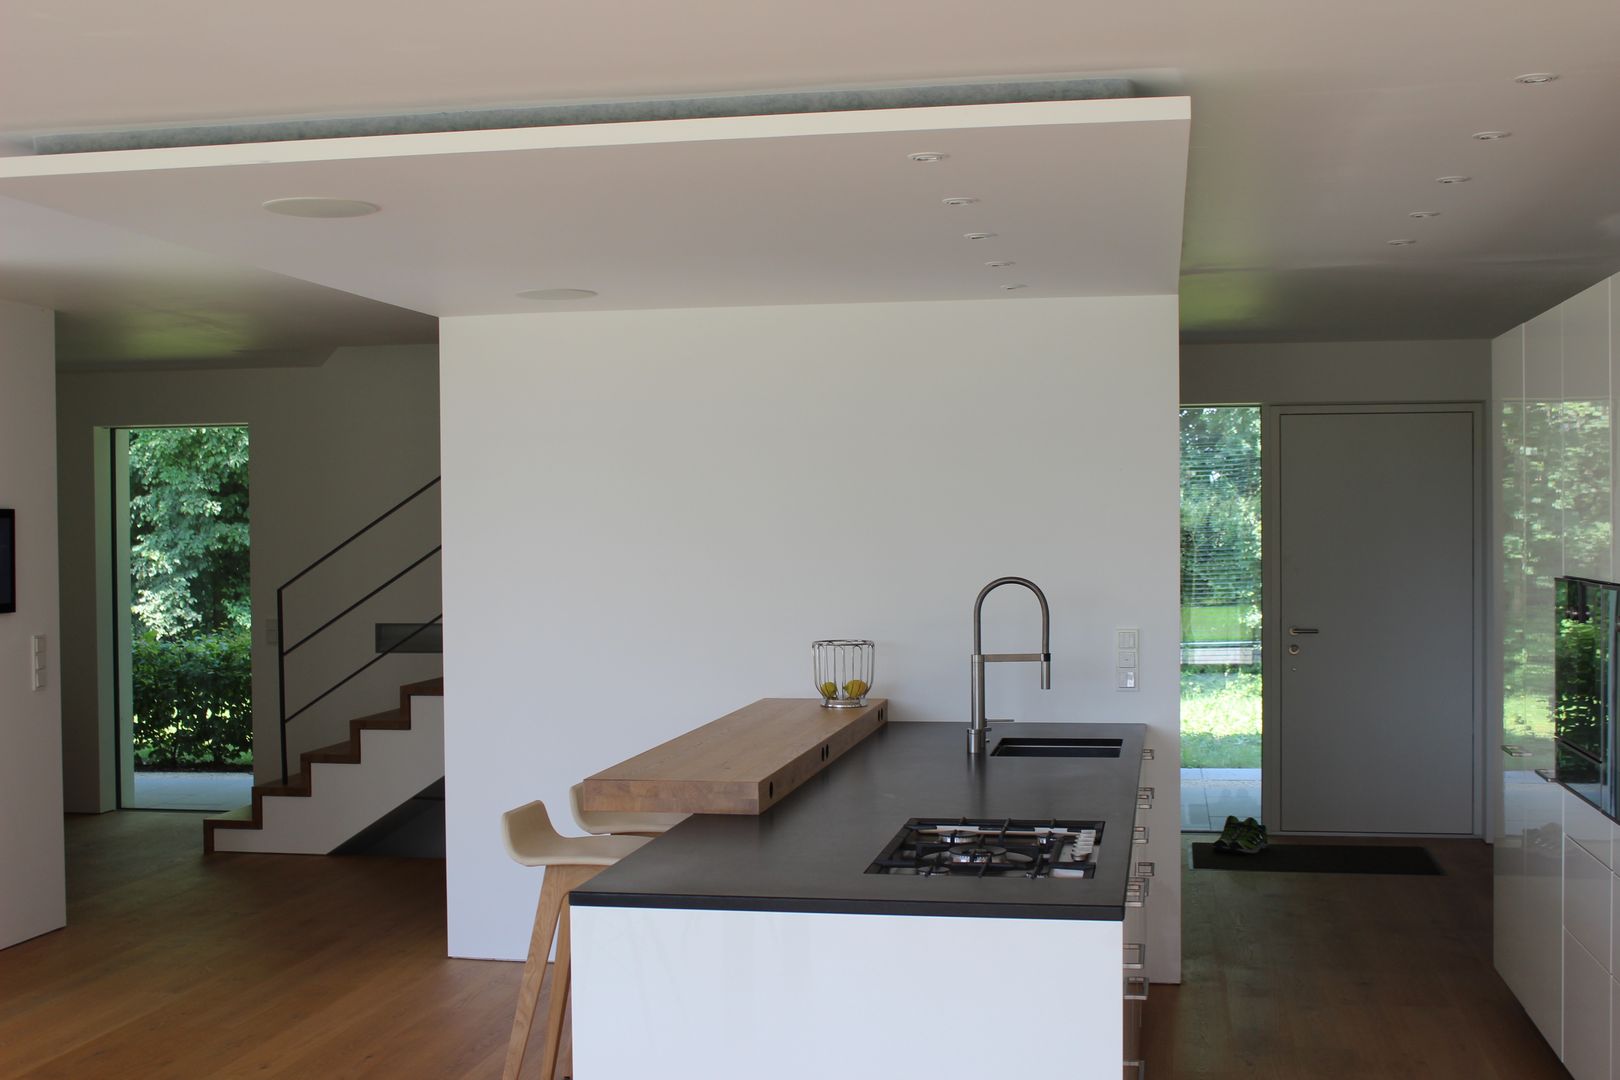 Einfamilienhaus in Prien am Chiemsee, Architekt Namberger Architekt Namberger Modern kitchen Sinks & taps